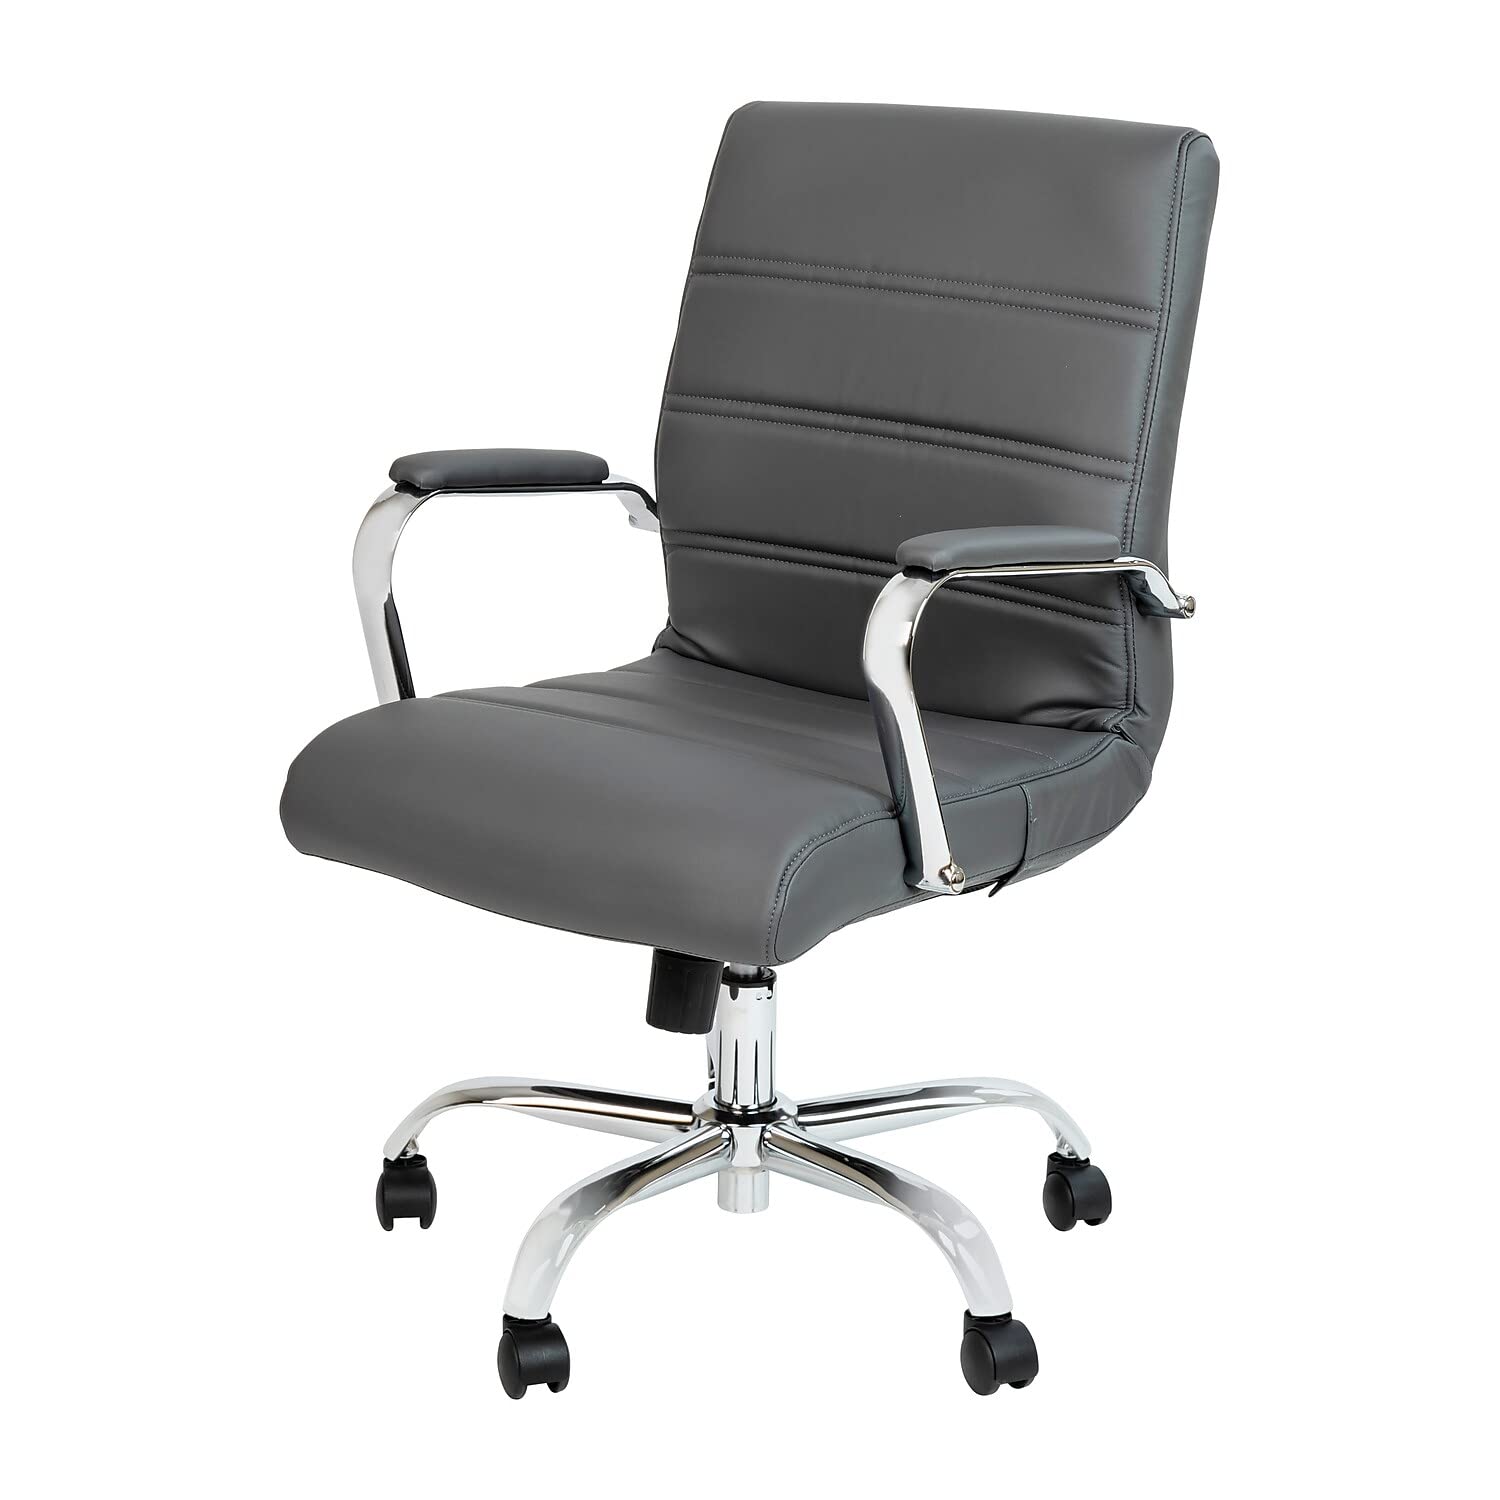 Flash Furniture Schreibtischstuhl mit mittlerer Rückenlehne – Grauer LederSoft Executive-Drehbürostuhl mit Chromgestell – Drehsessel